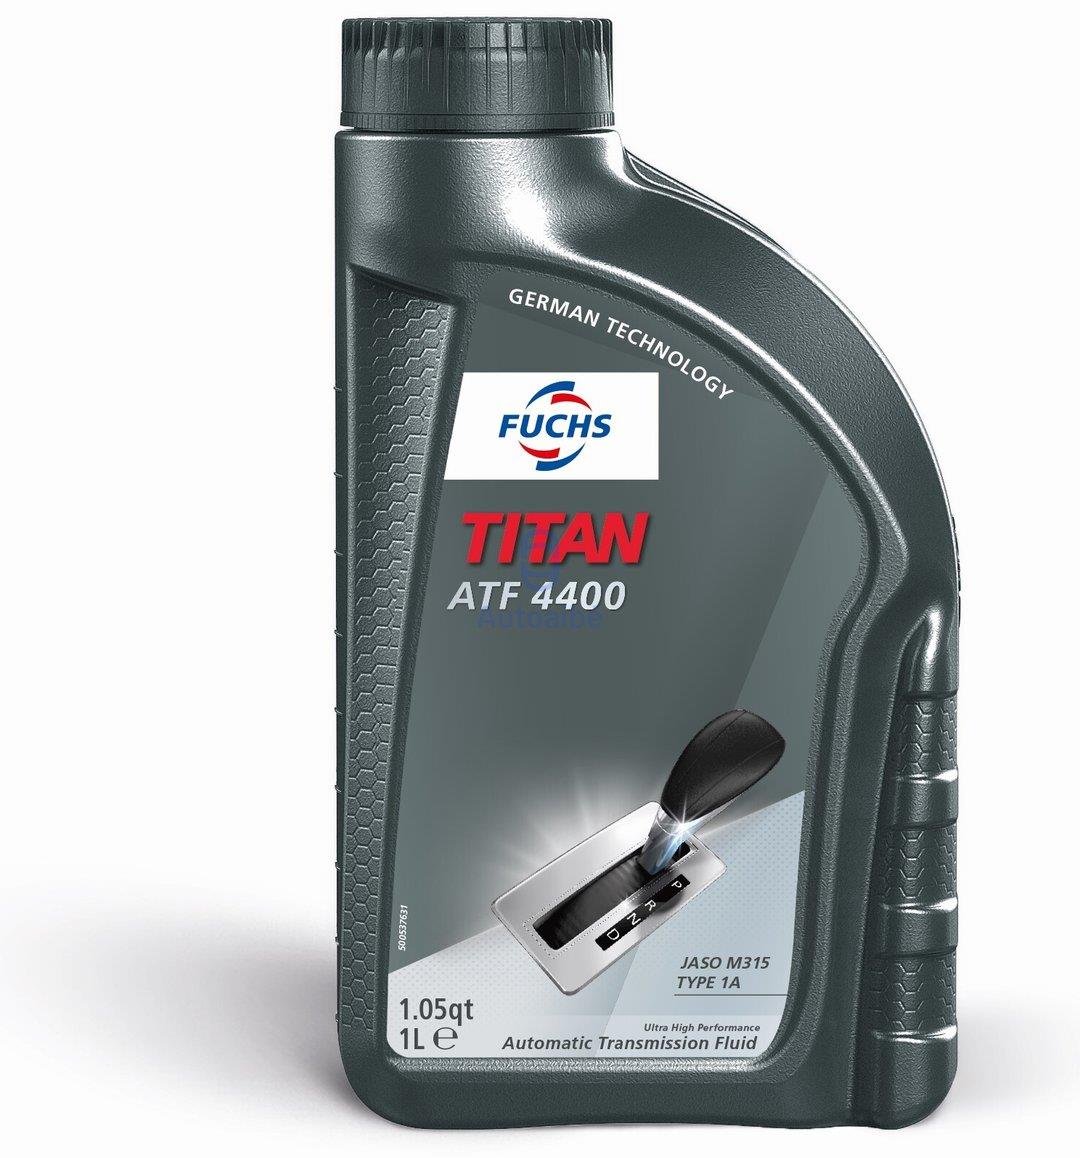 TITAN ATF 4400